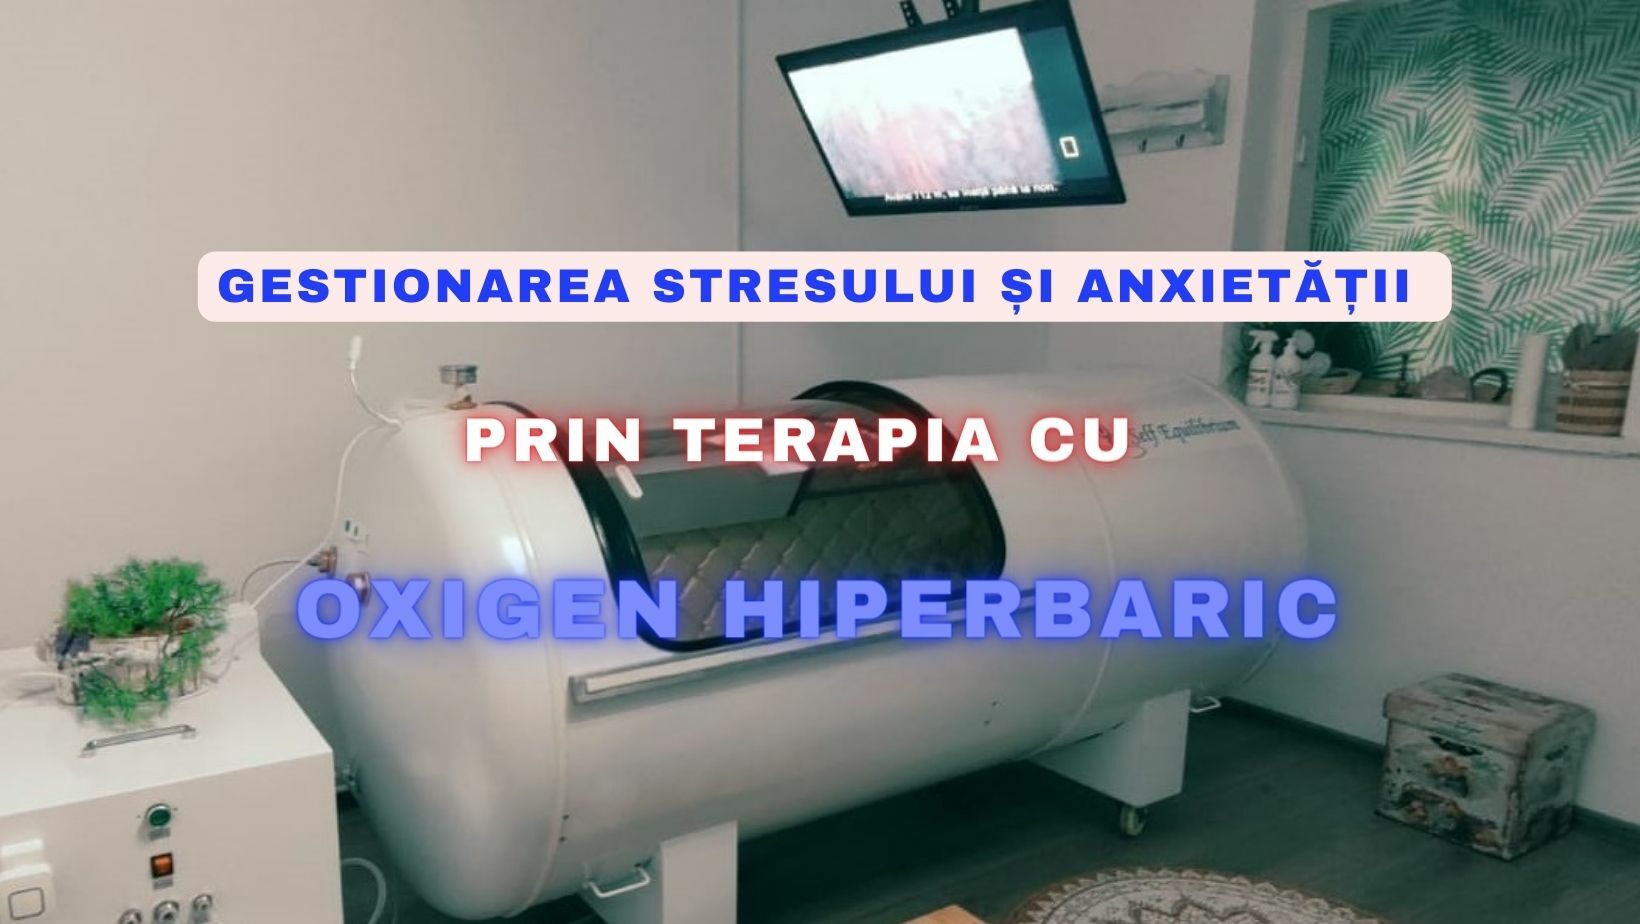 Gestionarea stresului și anxietății prin terapia cu oxigen hiperbaric